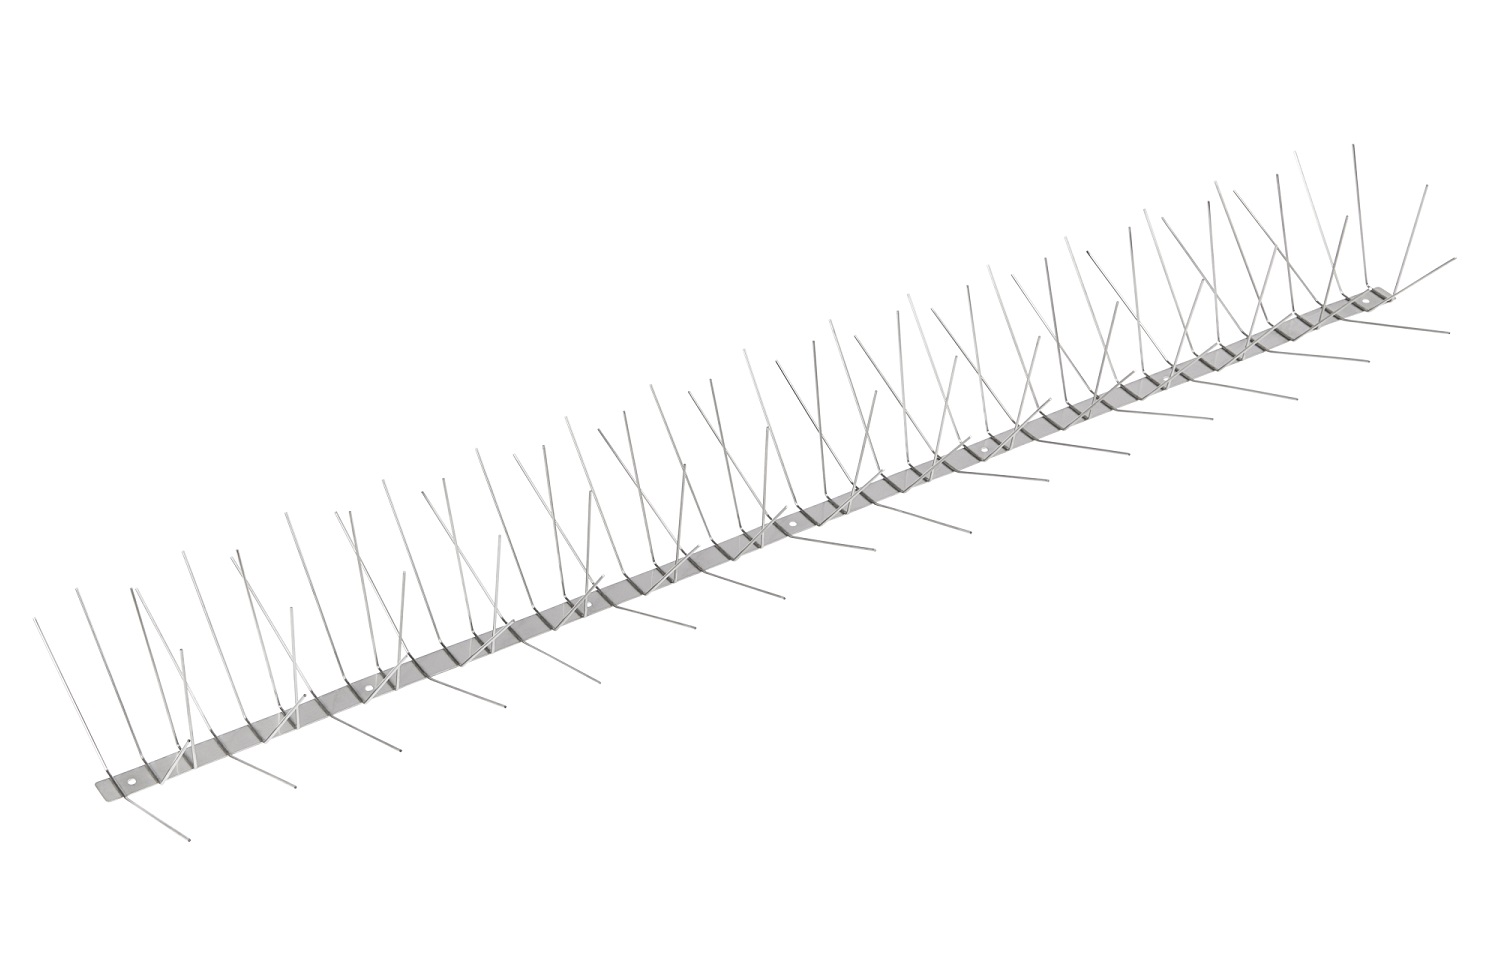 6 reihige Taubenabwehr-Spikes 1 m lang aus Edelstahl